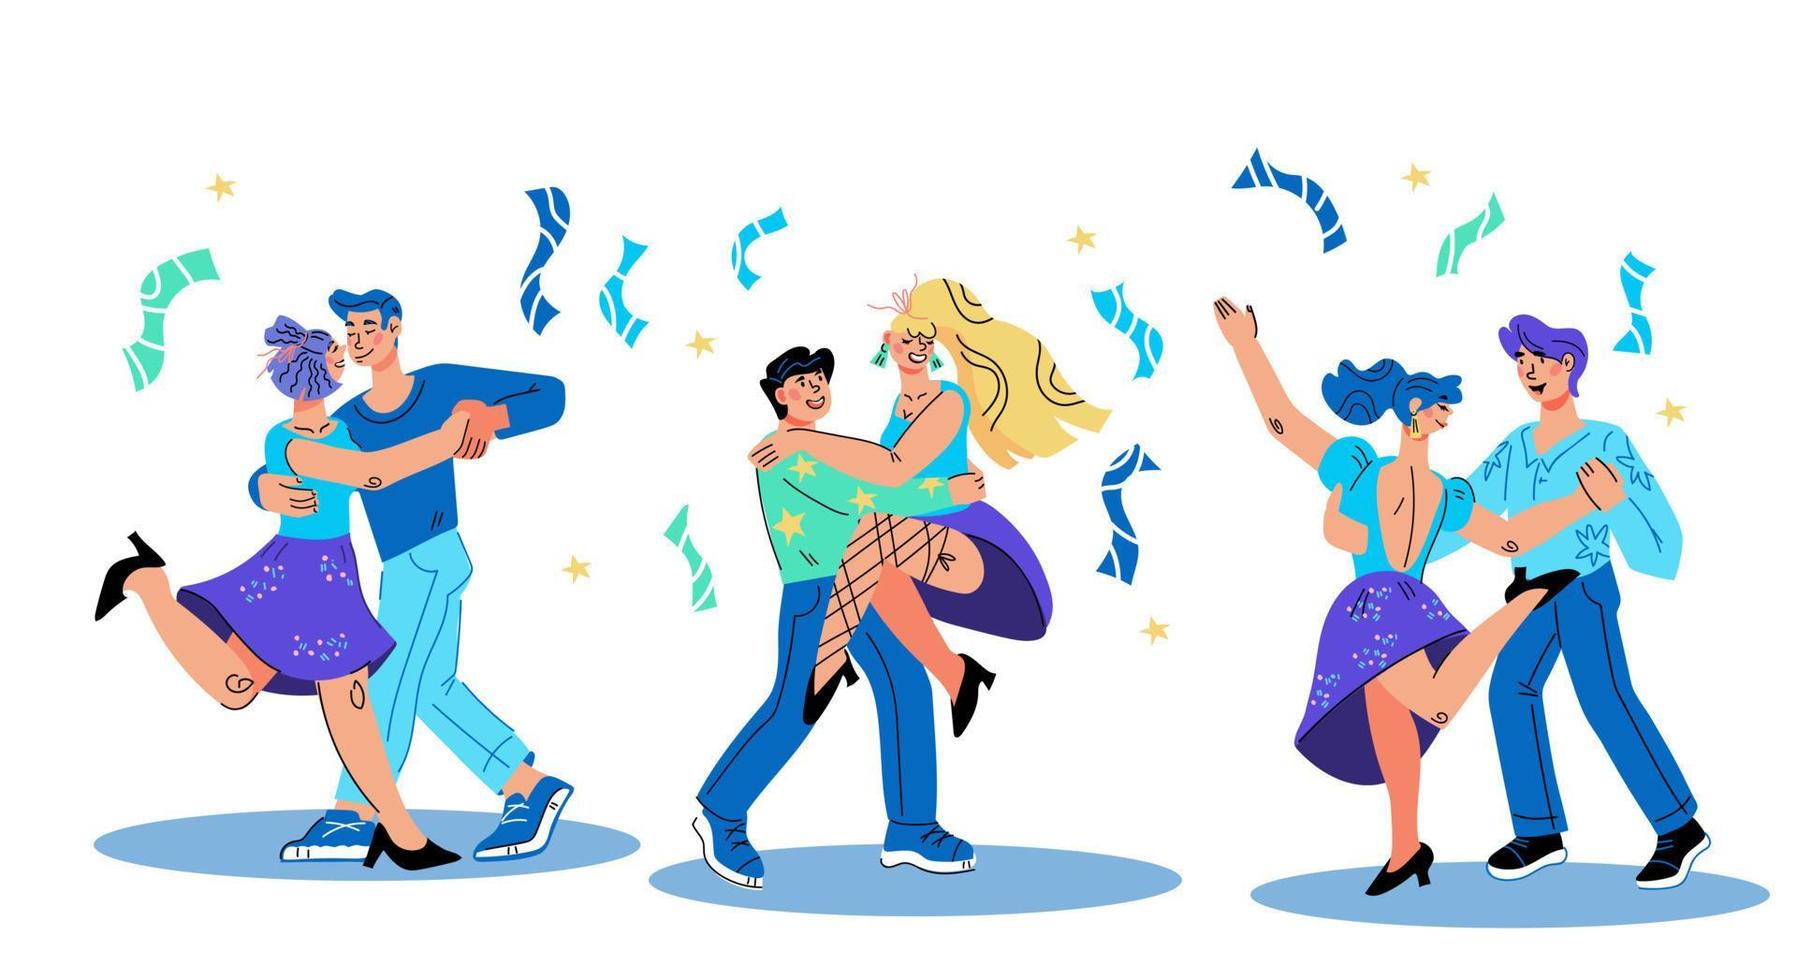 banner de fiesta de baile con personajes de hombres y mujeres bailando, ilustración vectorial en estilo de dibujos animados plano de moda aislado. club de baile o clases, plantilla de noche de música retro. vector